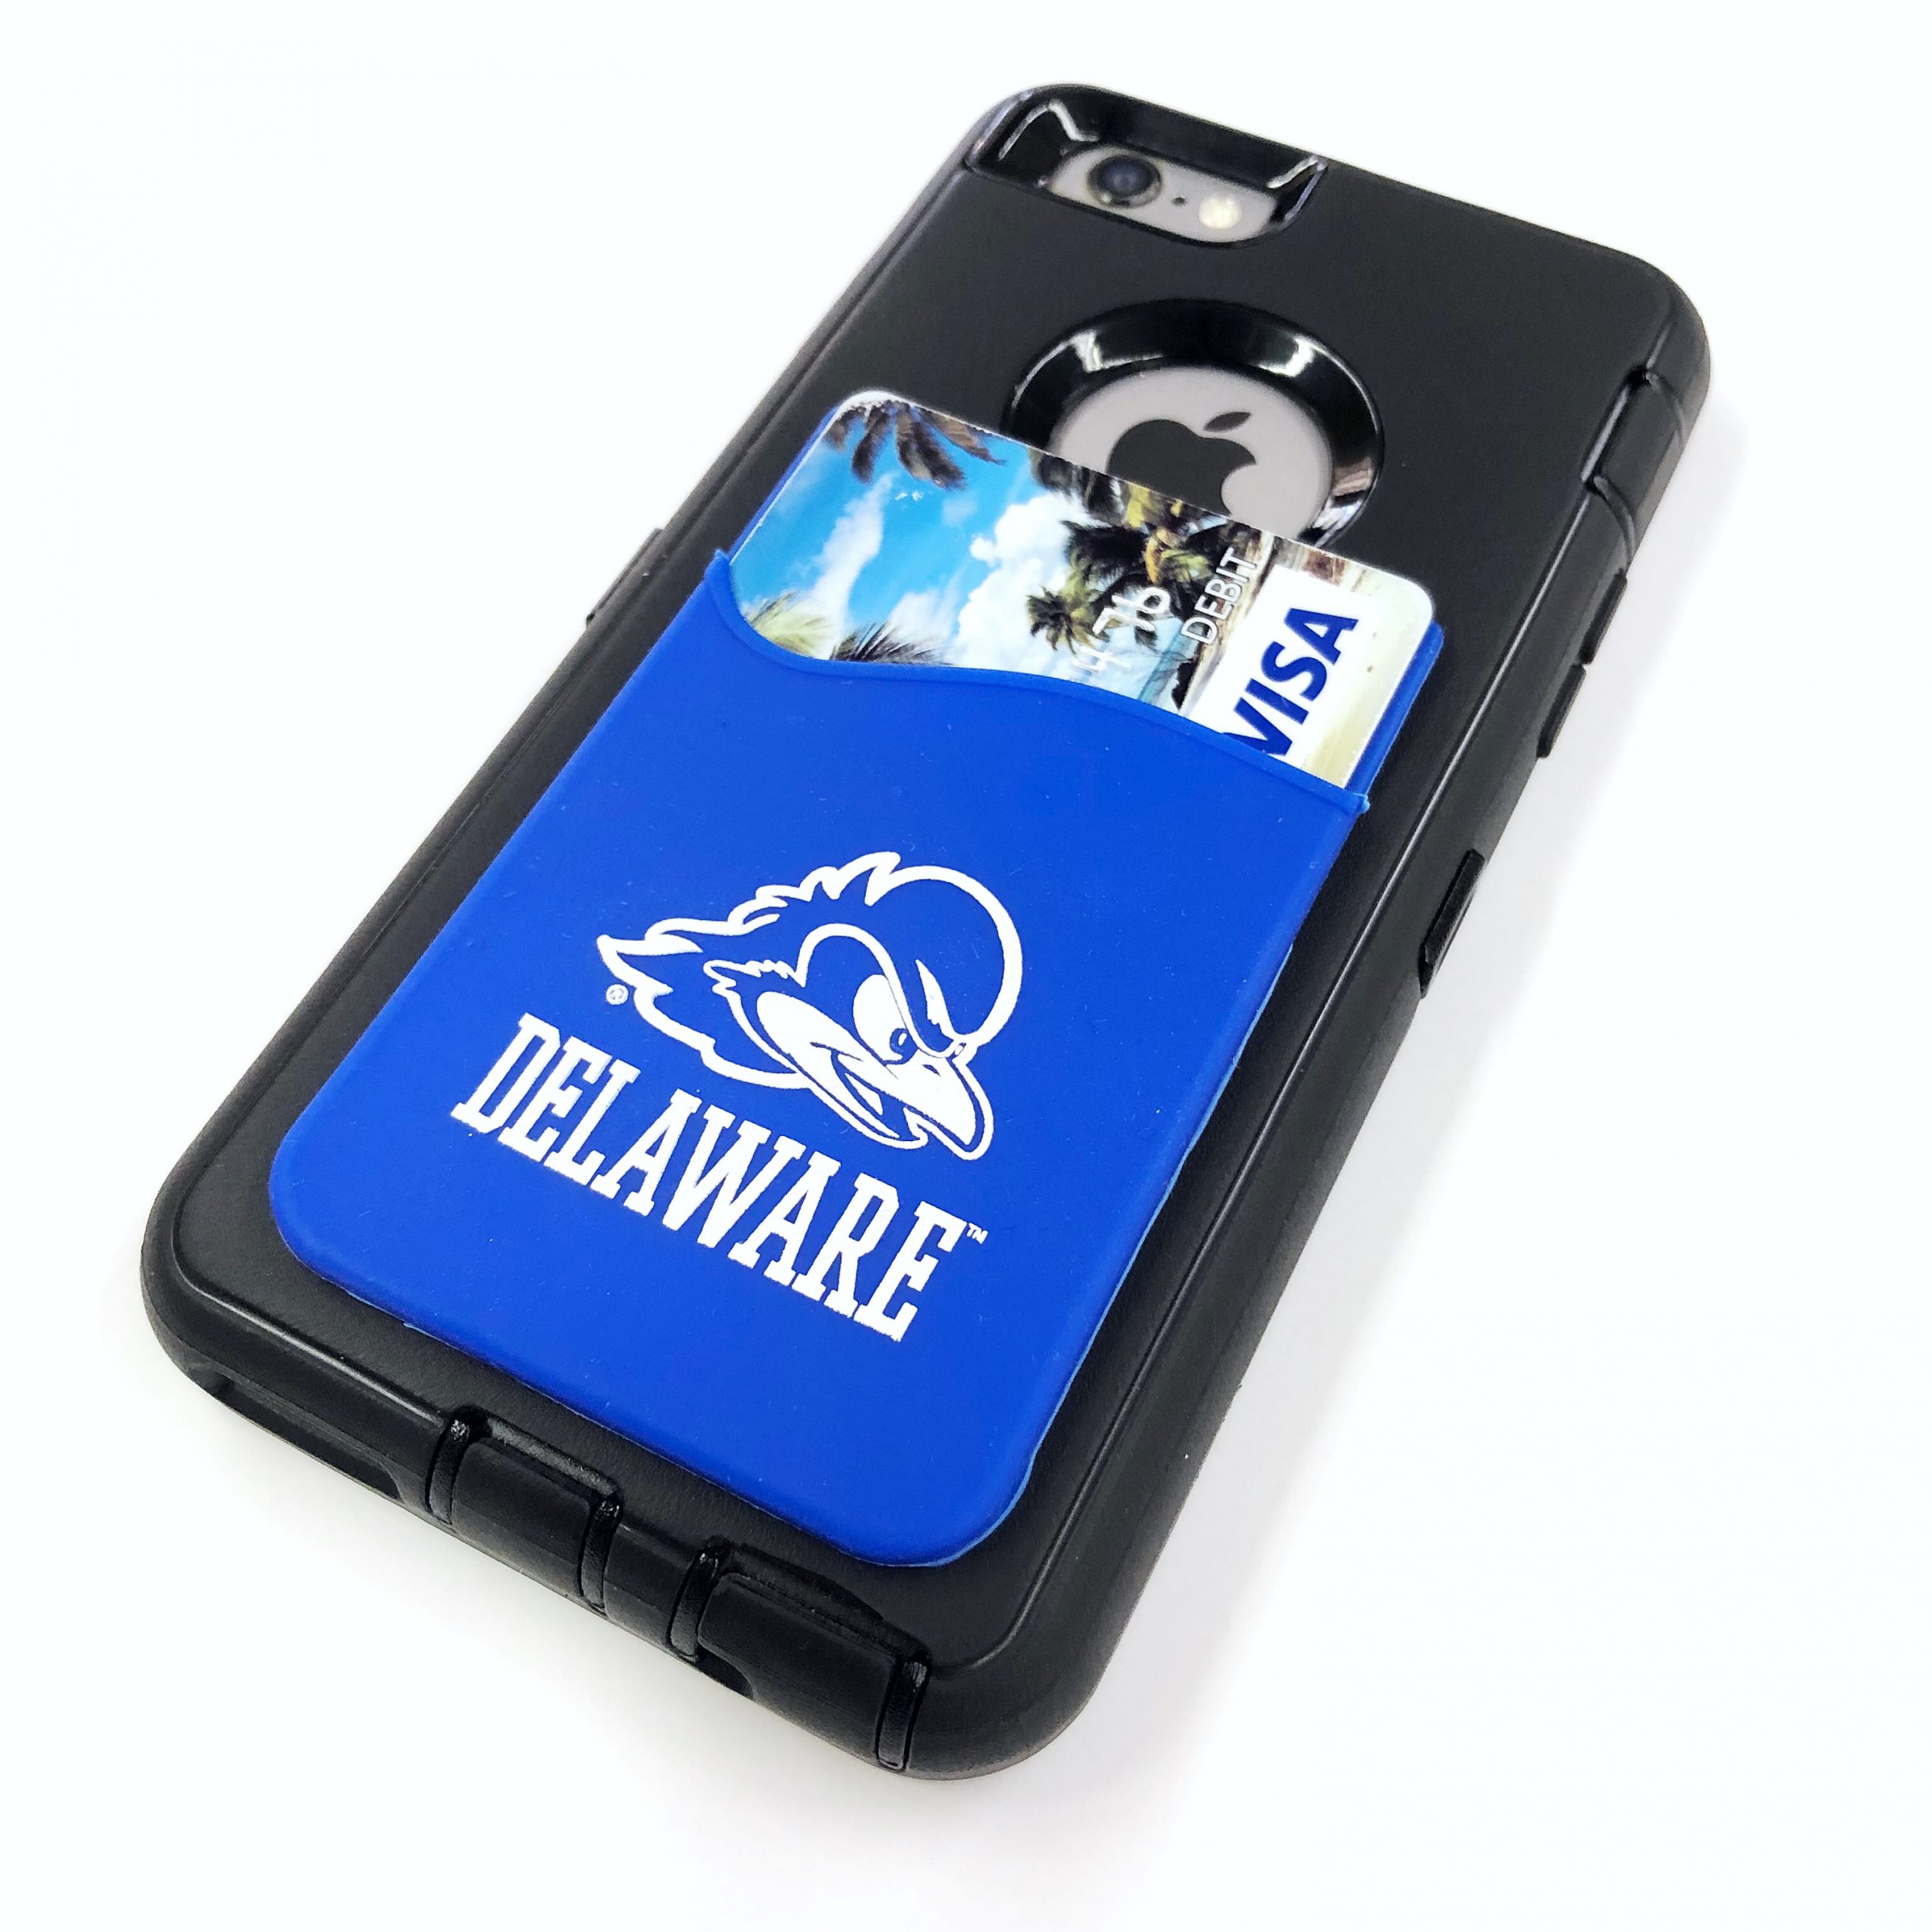 University of Delaware Cell Phone Pocket